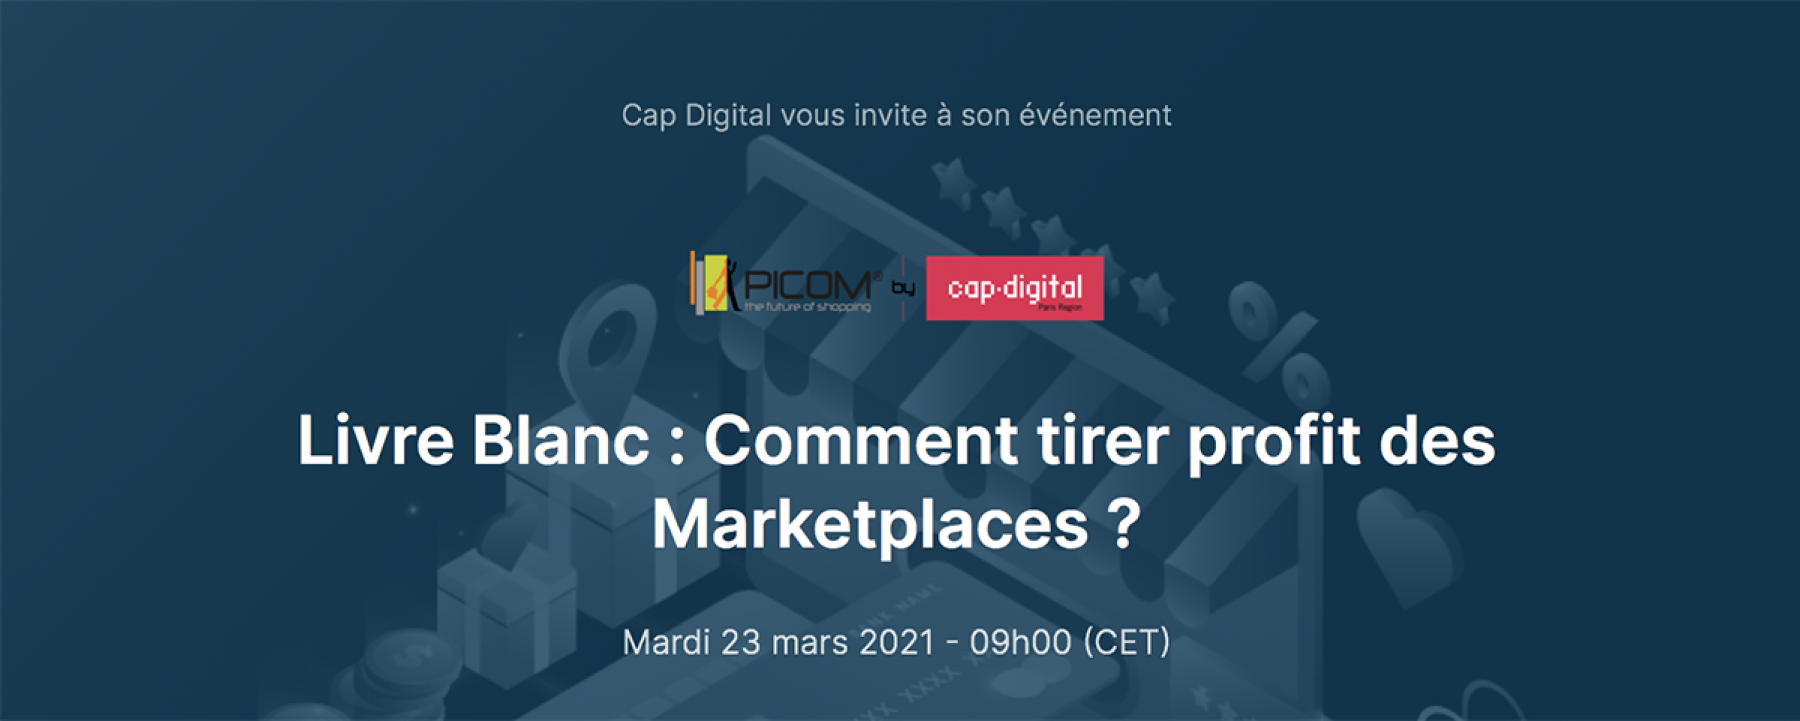 Comment tirer profit des Marketplaces ?, un webinar organisé par PICOM le 25 mars 2021 à 9h